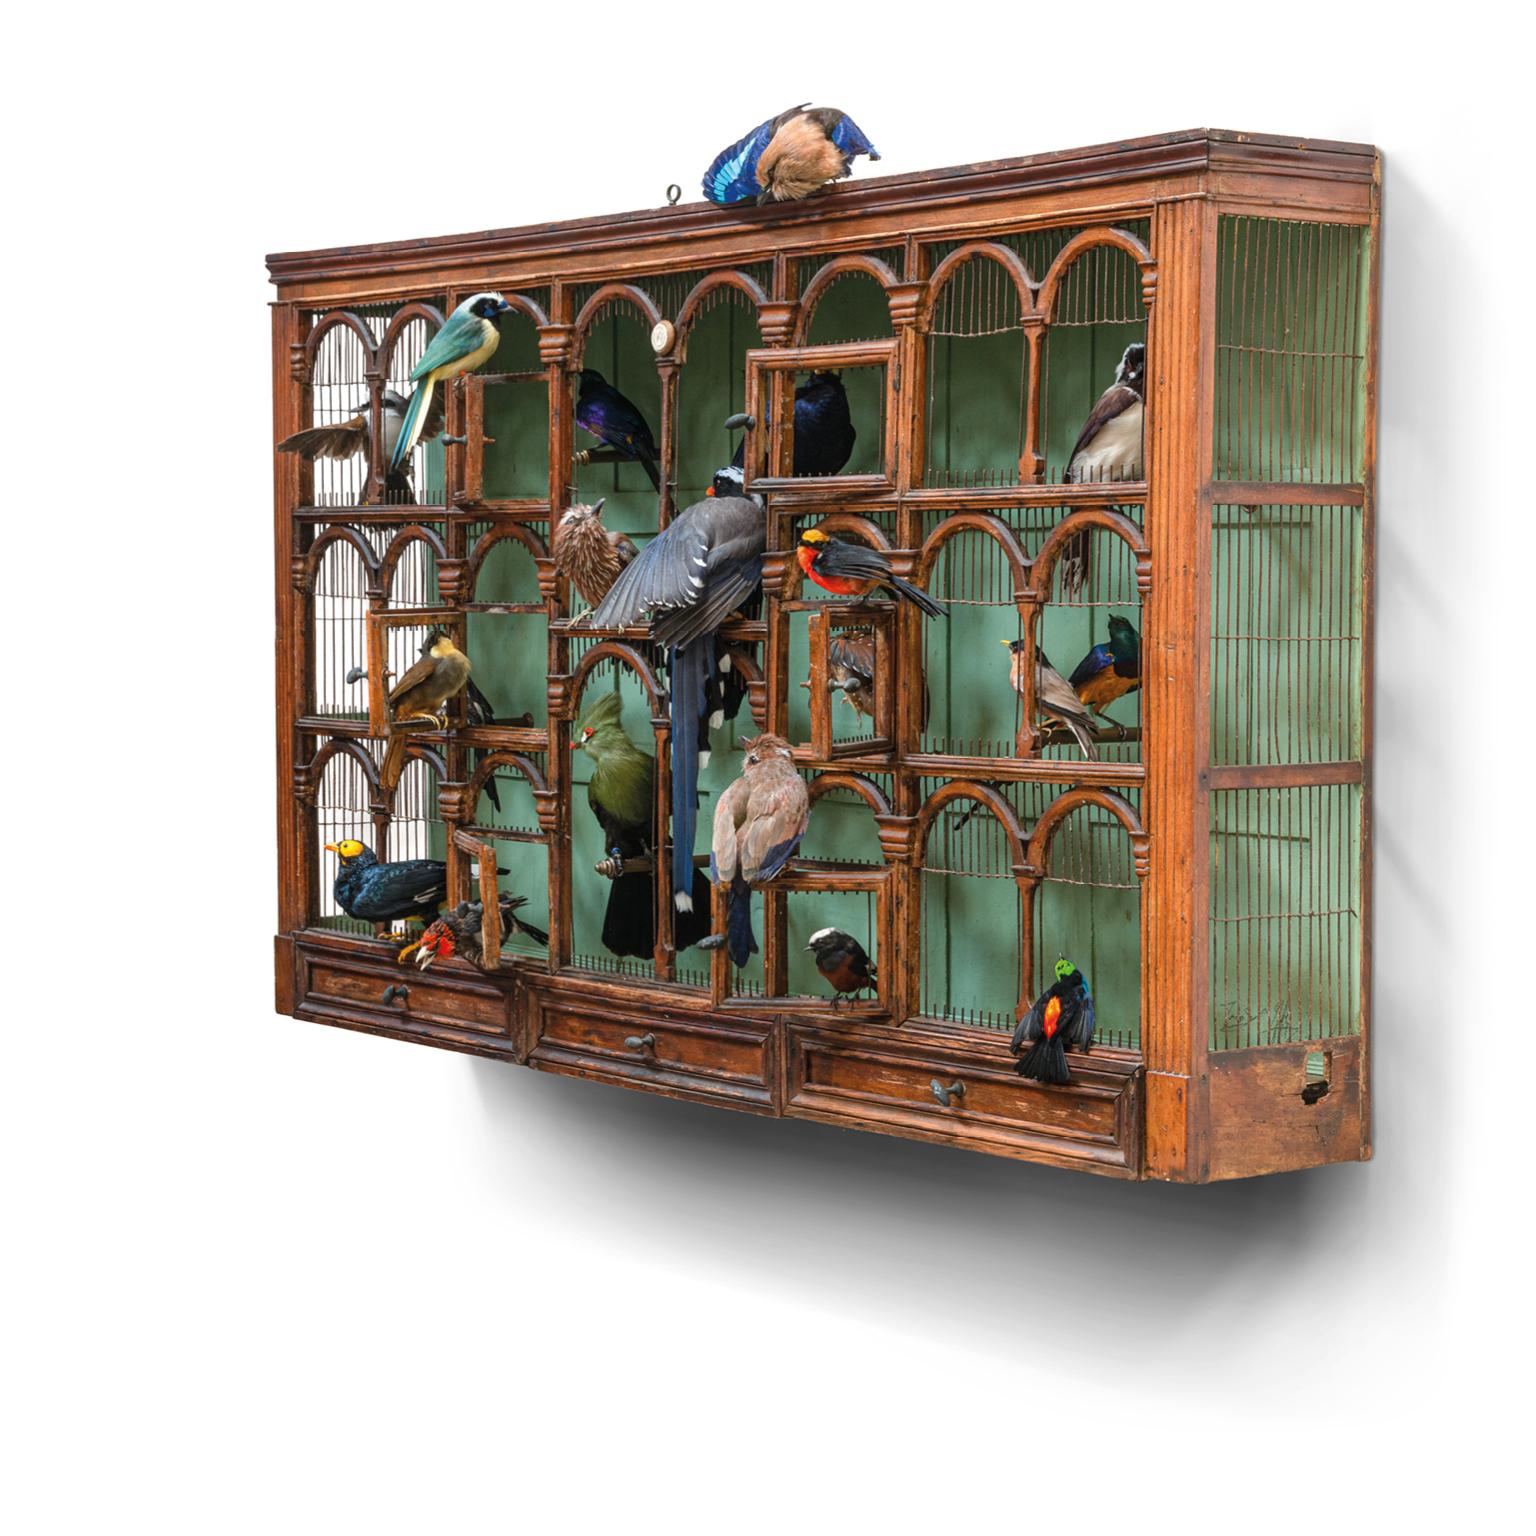 Ein riesiger französischer Vogelkäfig aus dem 19. Jahrhundert mit einer Komposition aus neunzehn fein taxidermischen Vögeln. Wir können uns vorstellen, dass dies ein erstaunliches Orchester mit schönen Melodien sein wird. Zu den Musikern gehören